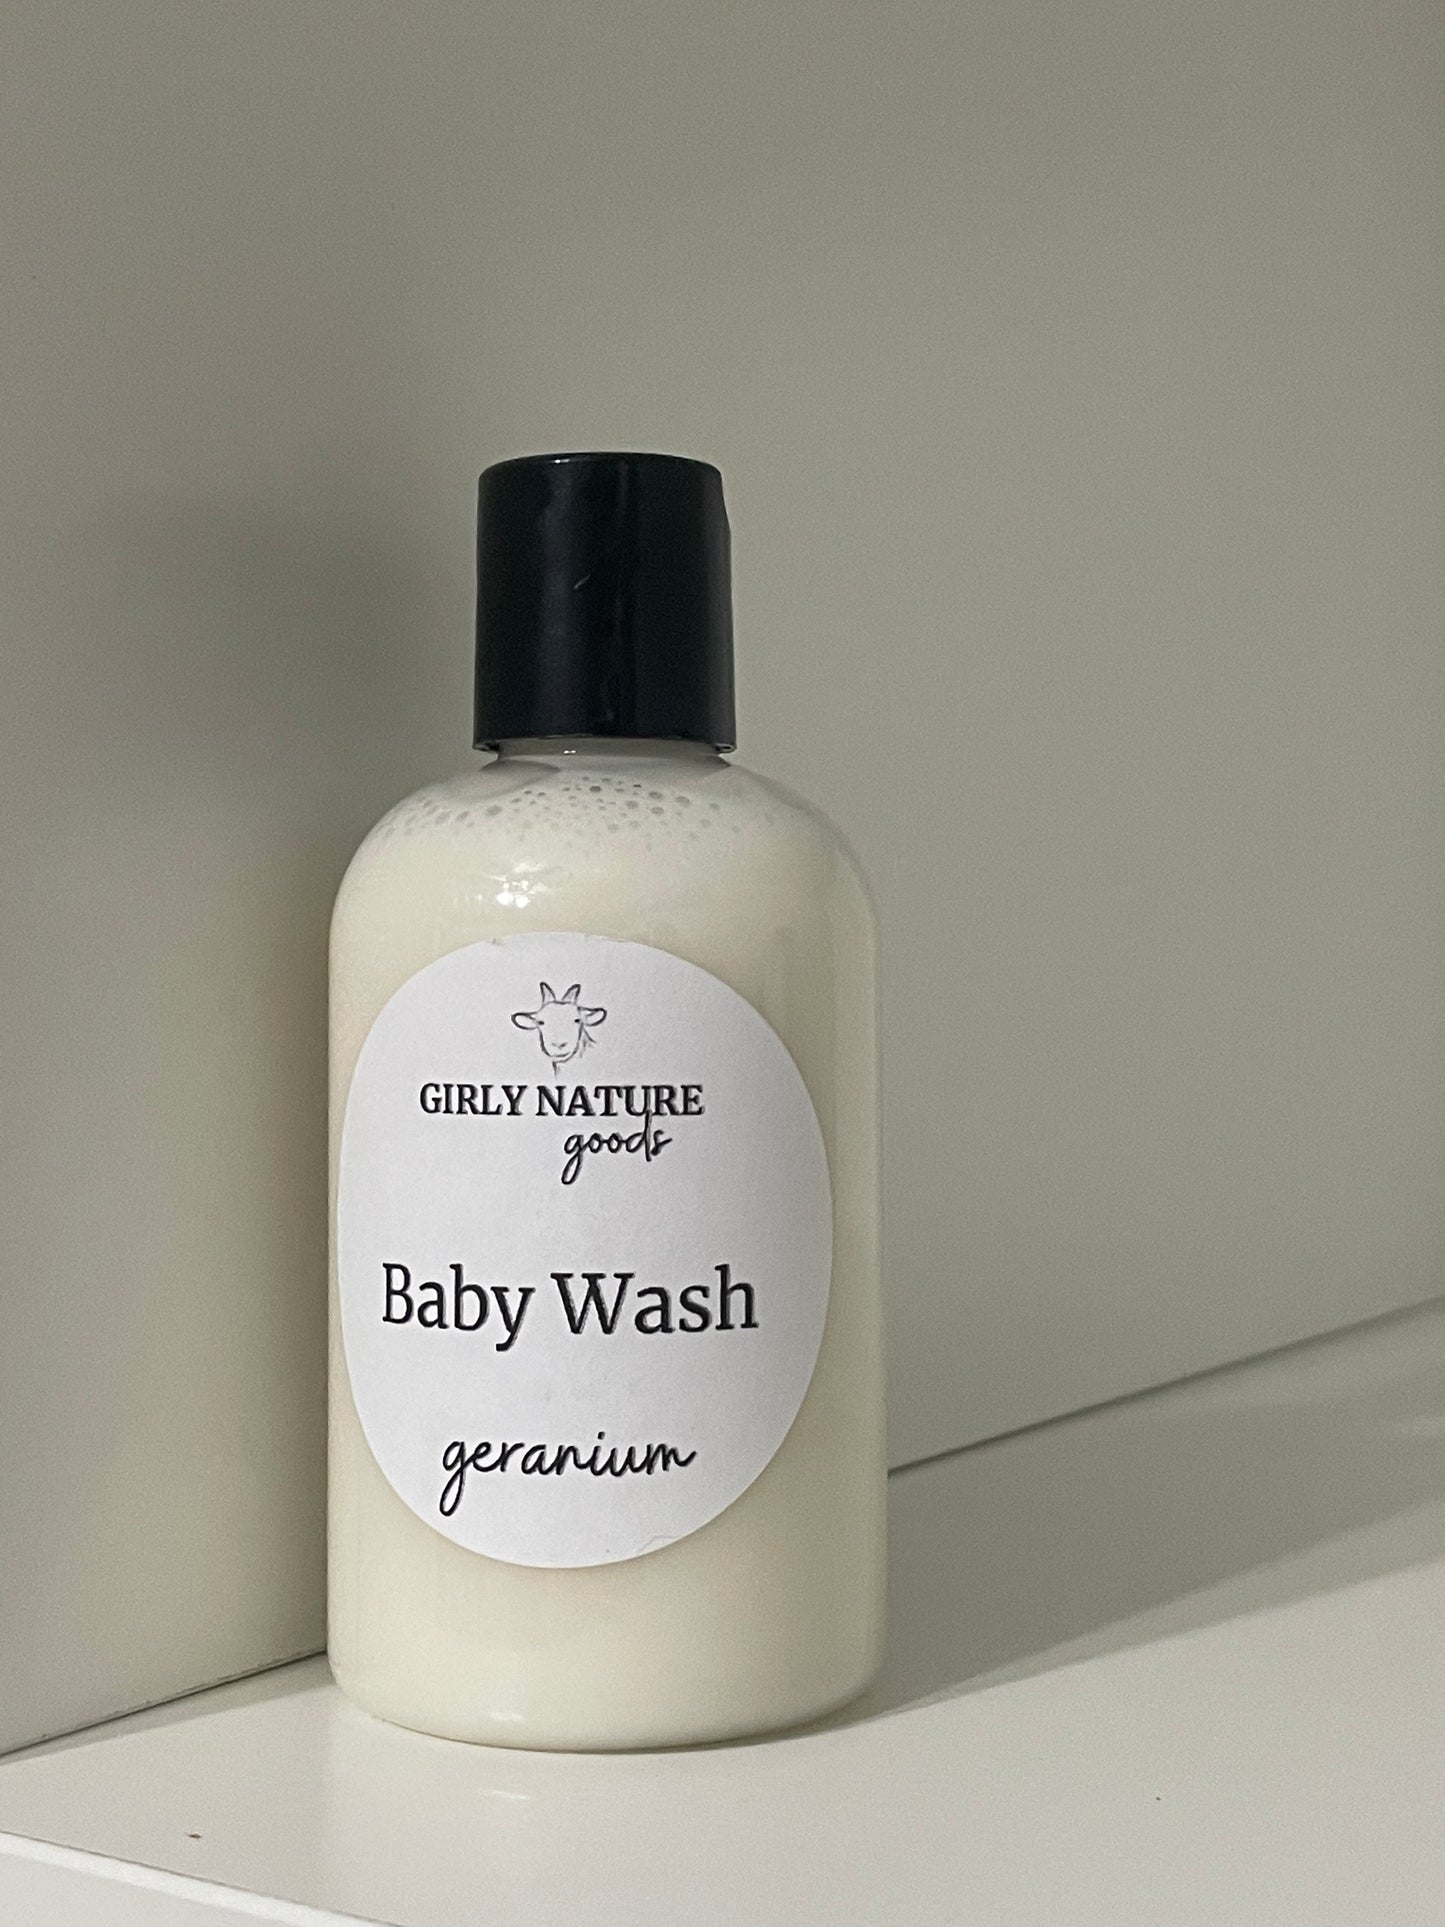 Baby Wash